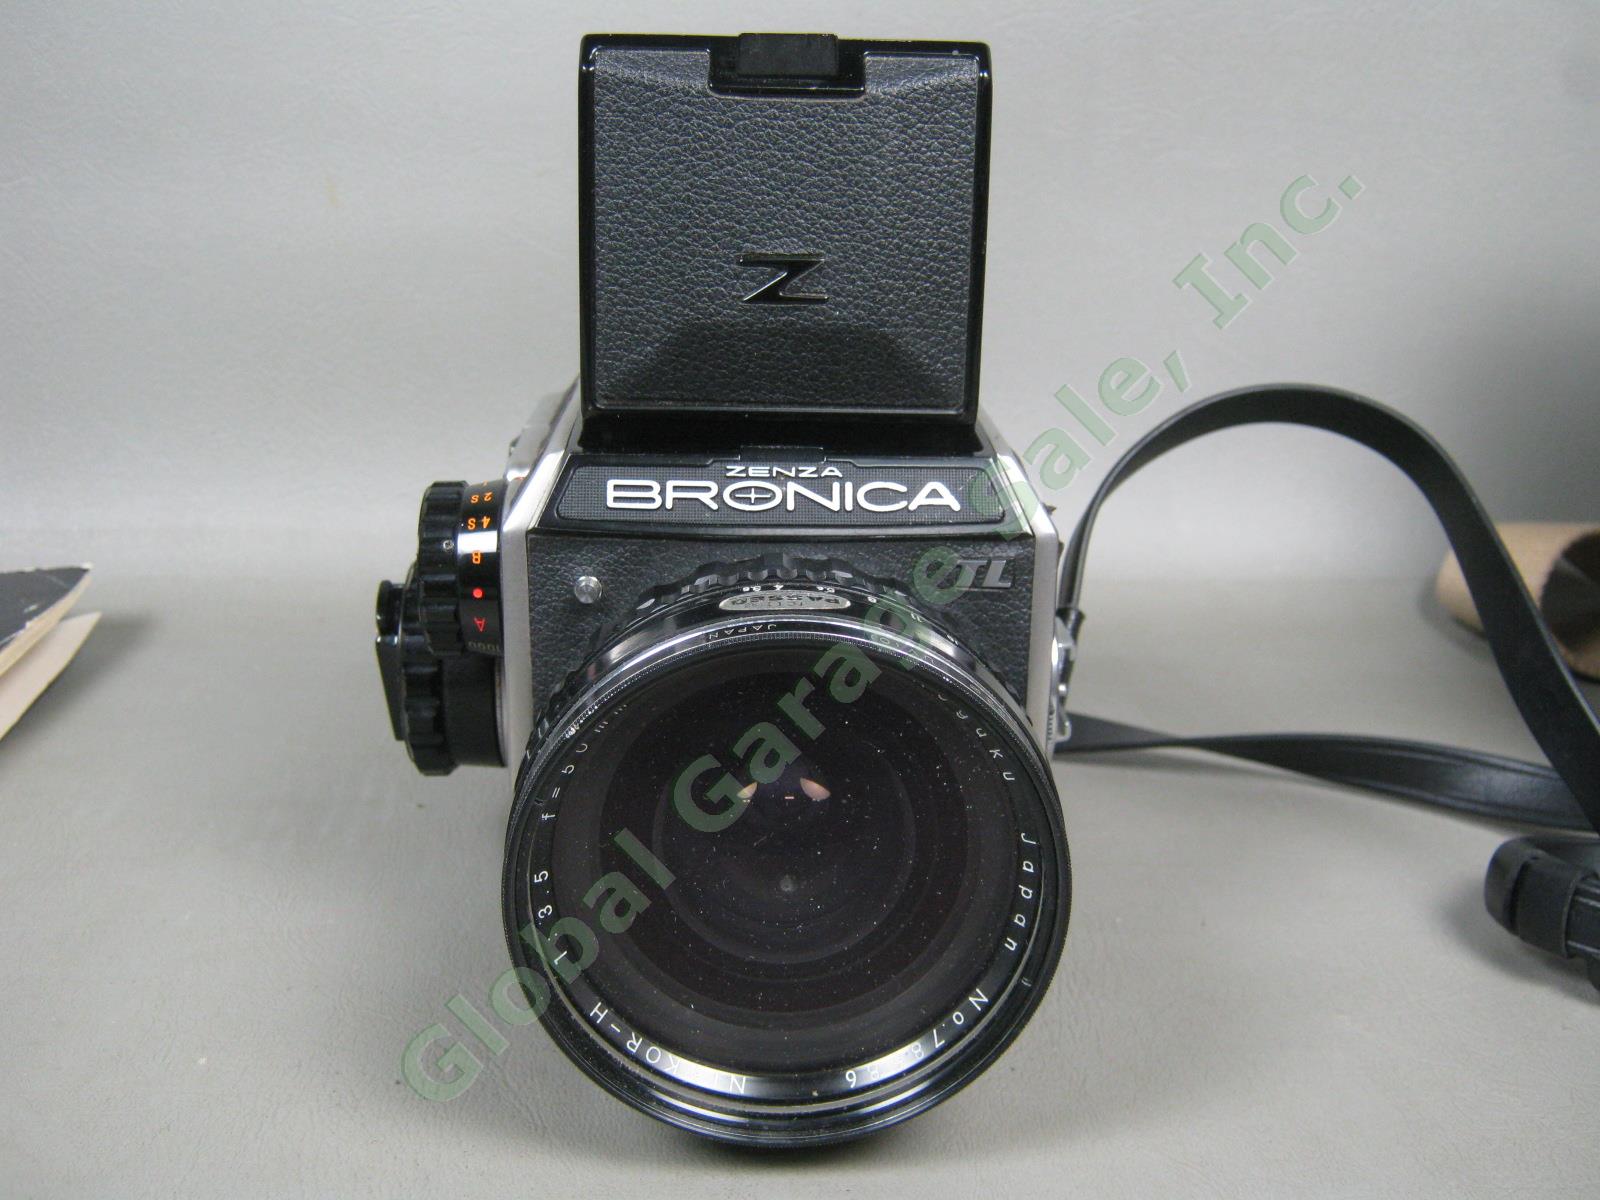 Zenza Bronica EC-TL Camera Nippon Kogaku Nikkor-H 50mm 1:3.5 f/3.5 Lens Bundle 2